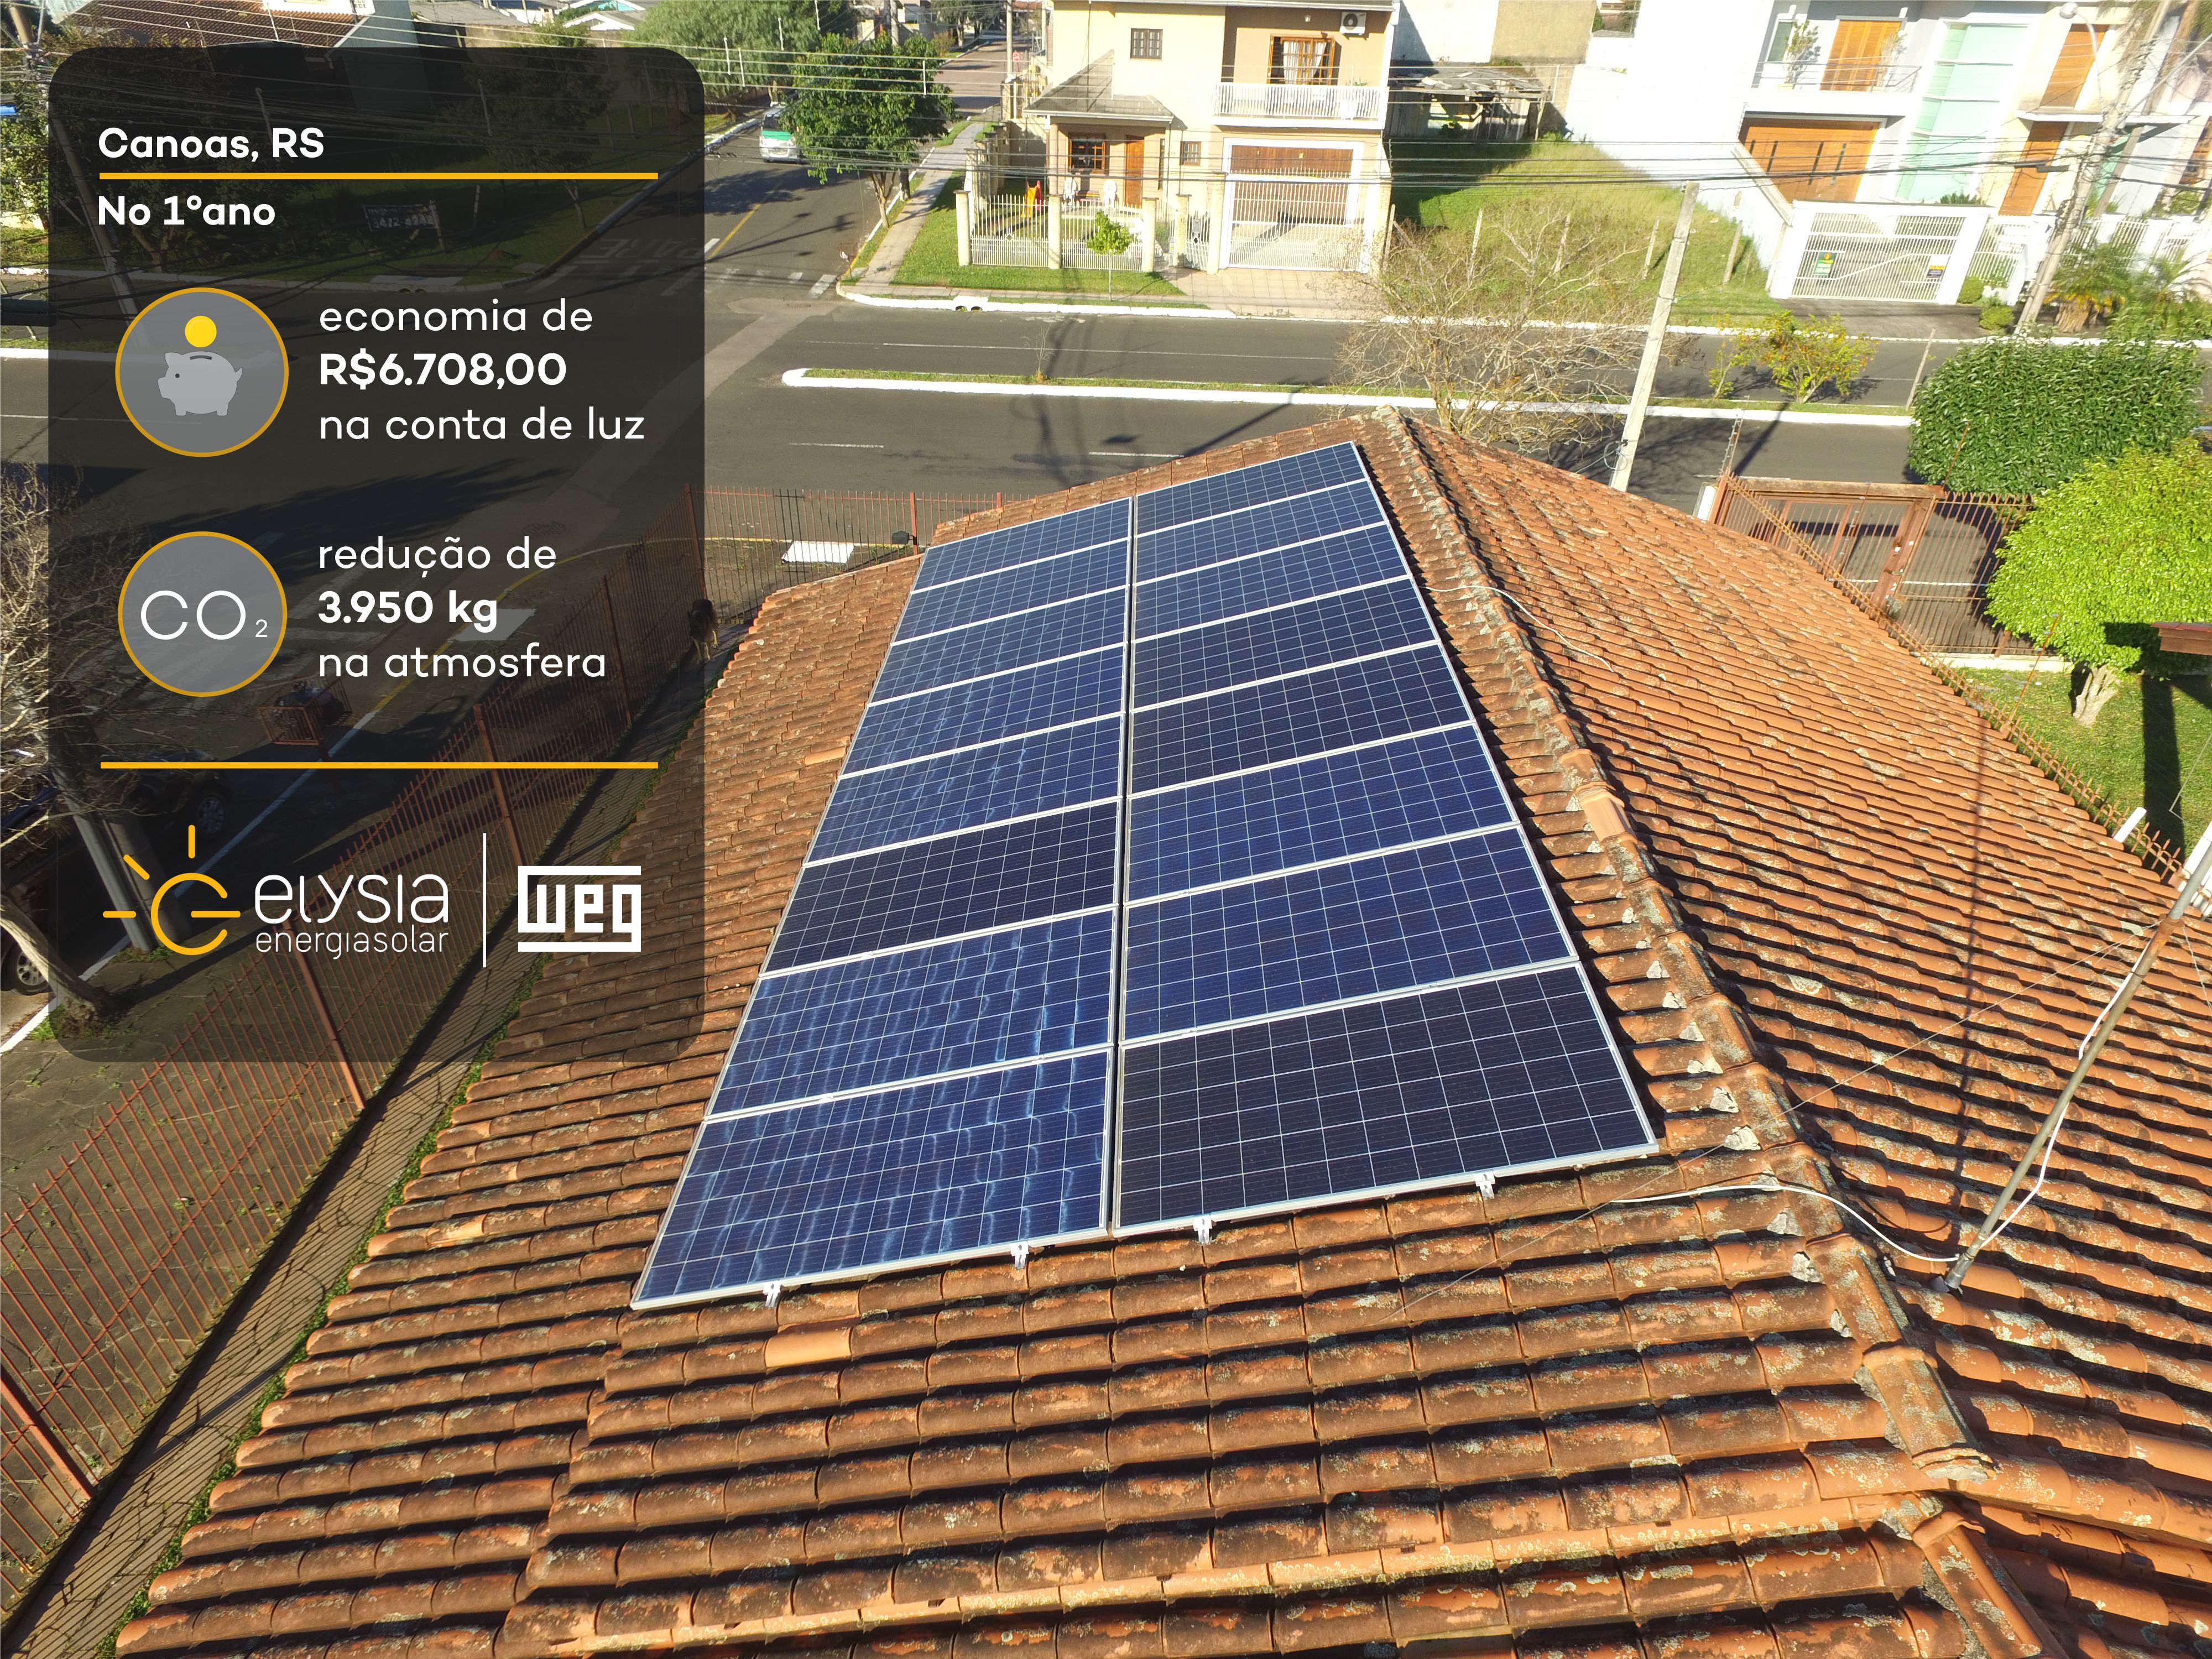 Sistema fotovoltaico em Canoas - Elysia energia solar Rio Grande do Sul